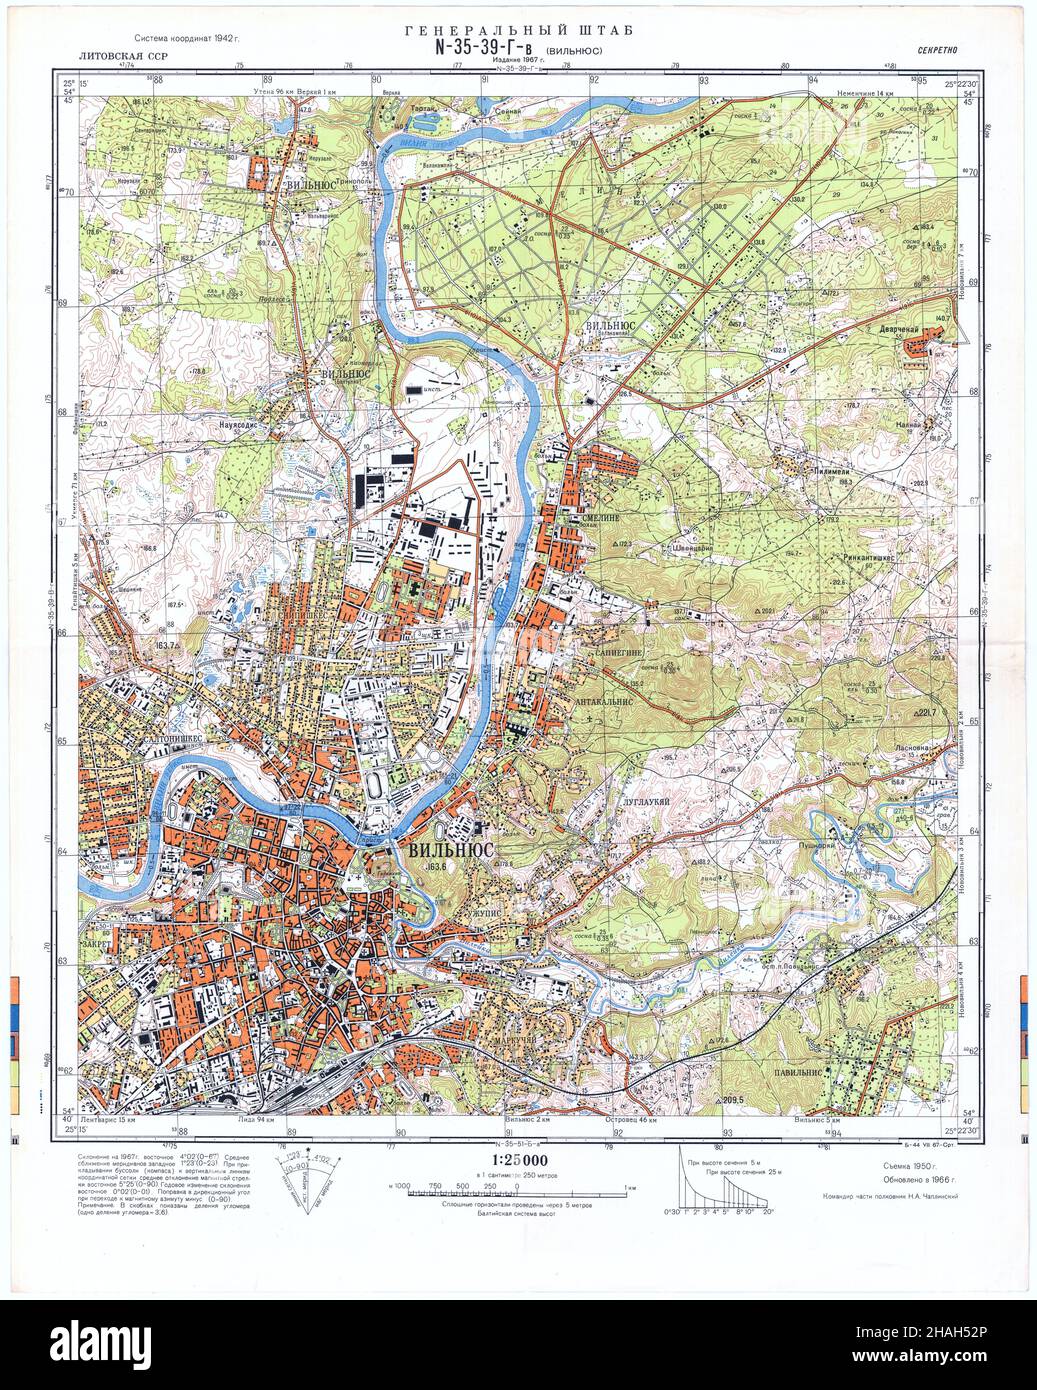 Wilno Map, Vilnius Map, Wilna Map, Old Wilno Map, Retro Vilnius Map, Vintage Vilnius City, Old Wilno, Retro Vilnius Poster, Lithuania Map, Wilno Print Stock Photo